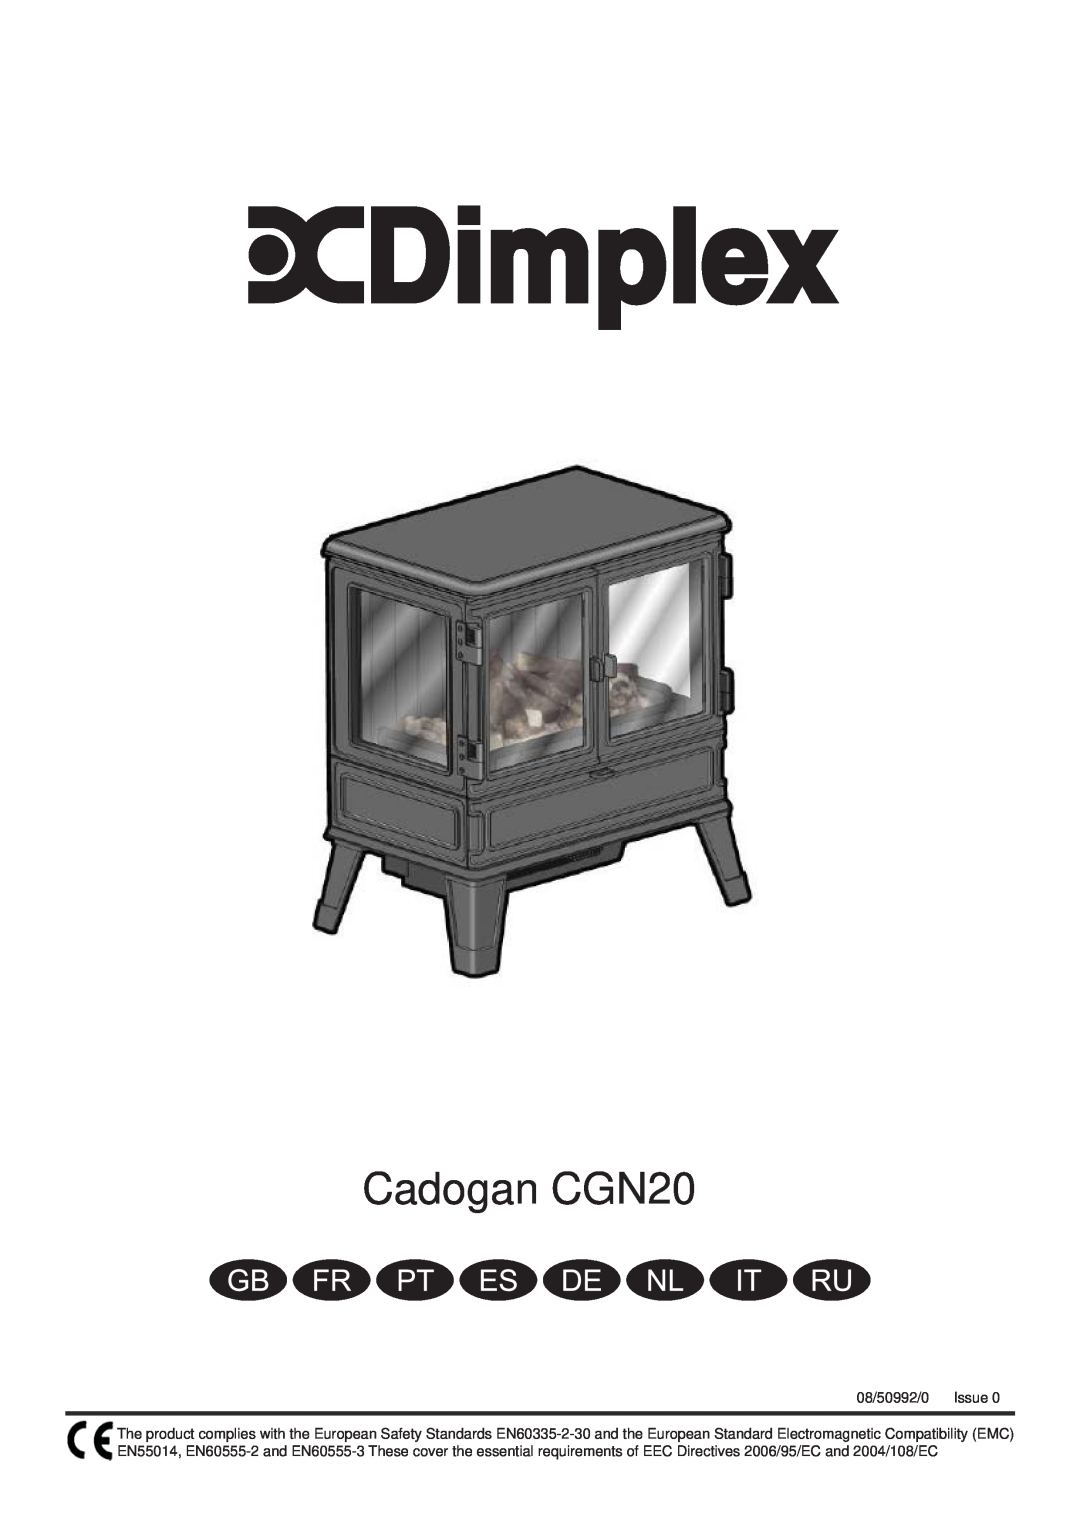 Dimplex CGn20 manual Cadogan CGN20, 08/50992/0, Issue 